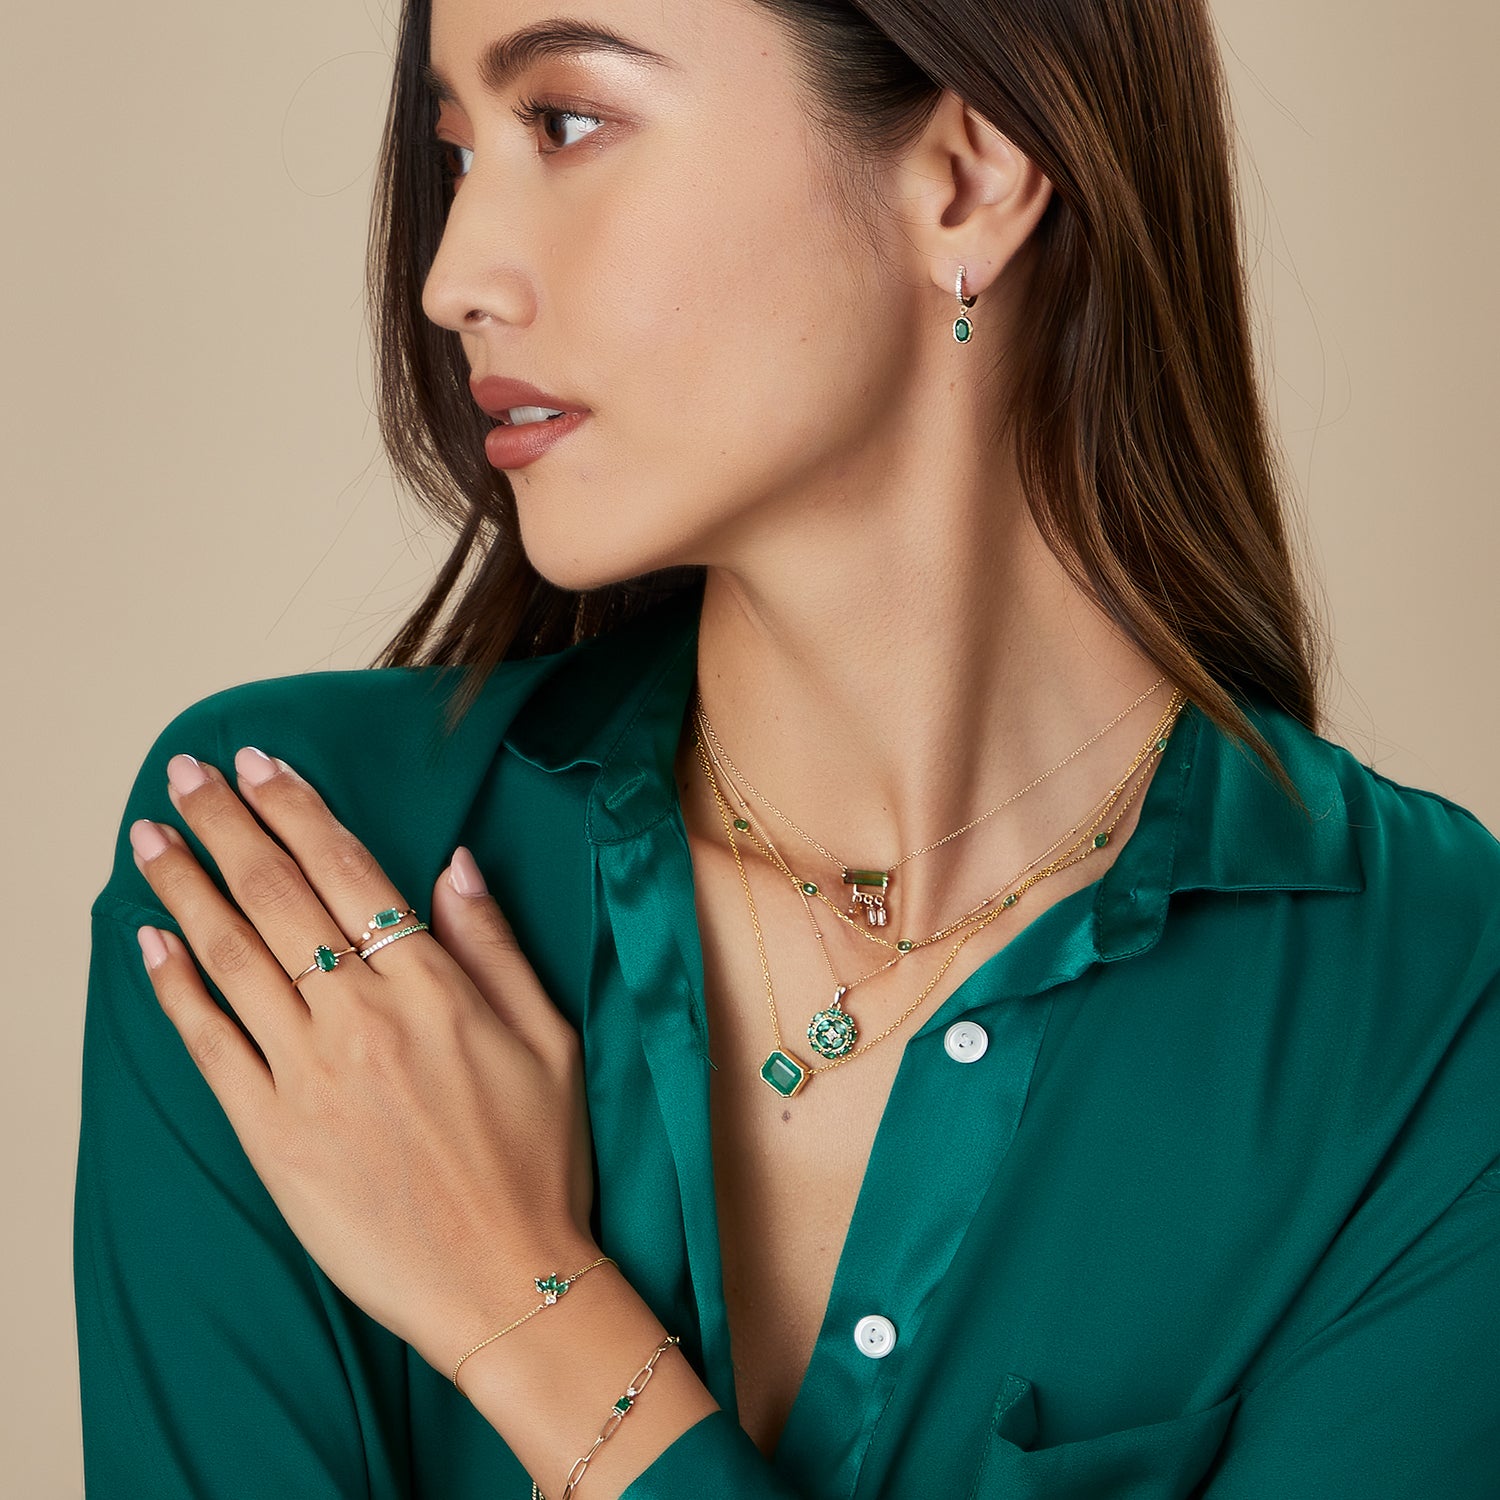 Floral Emerald Diamond Bracelet